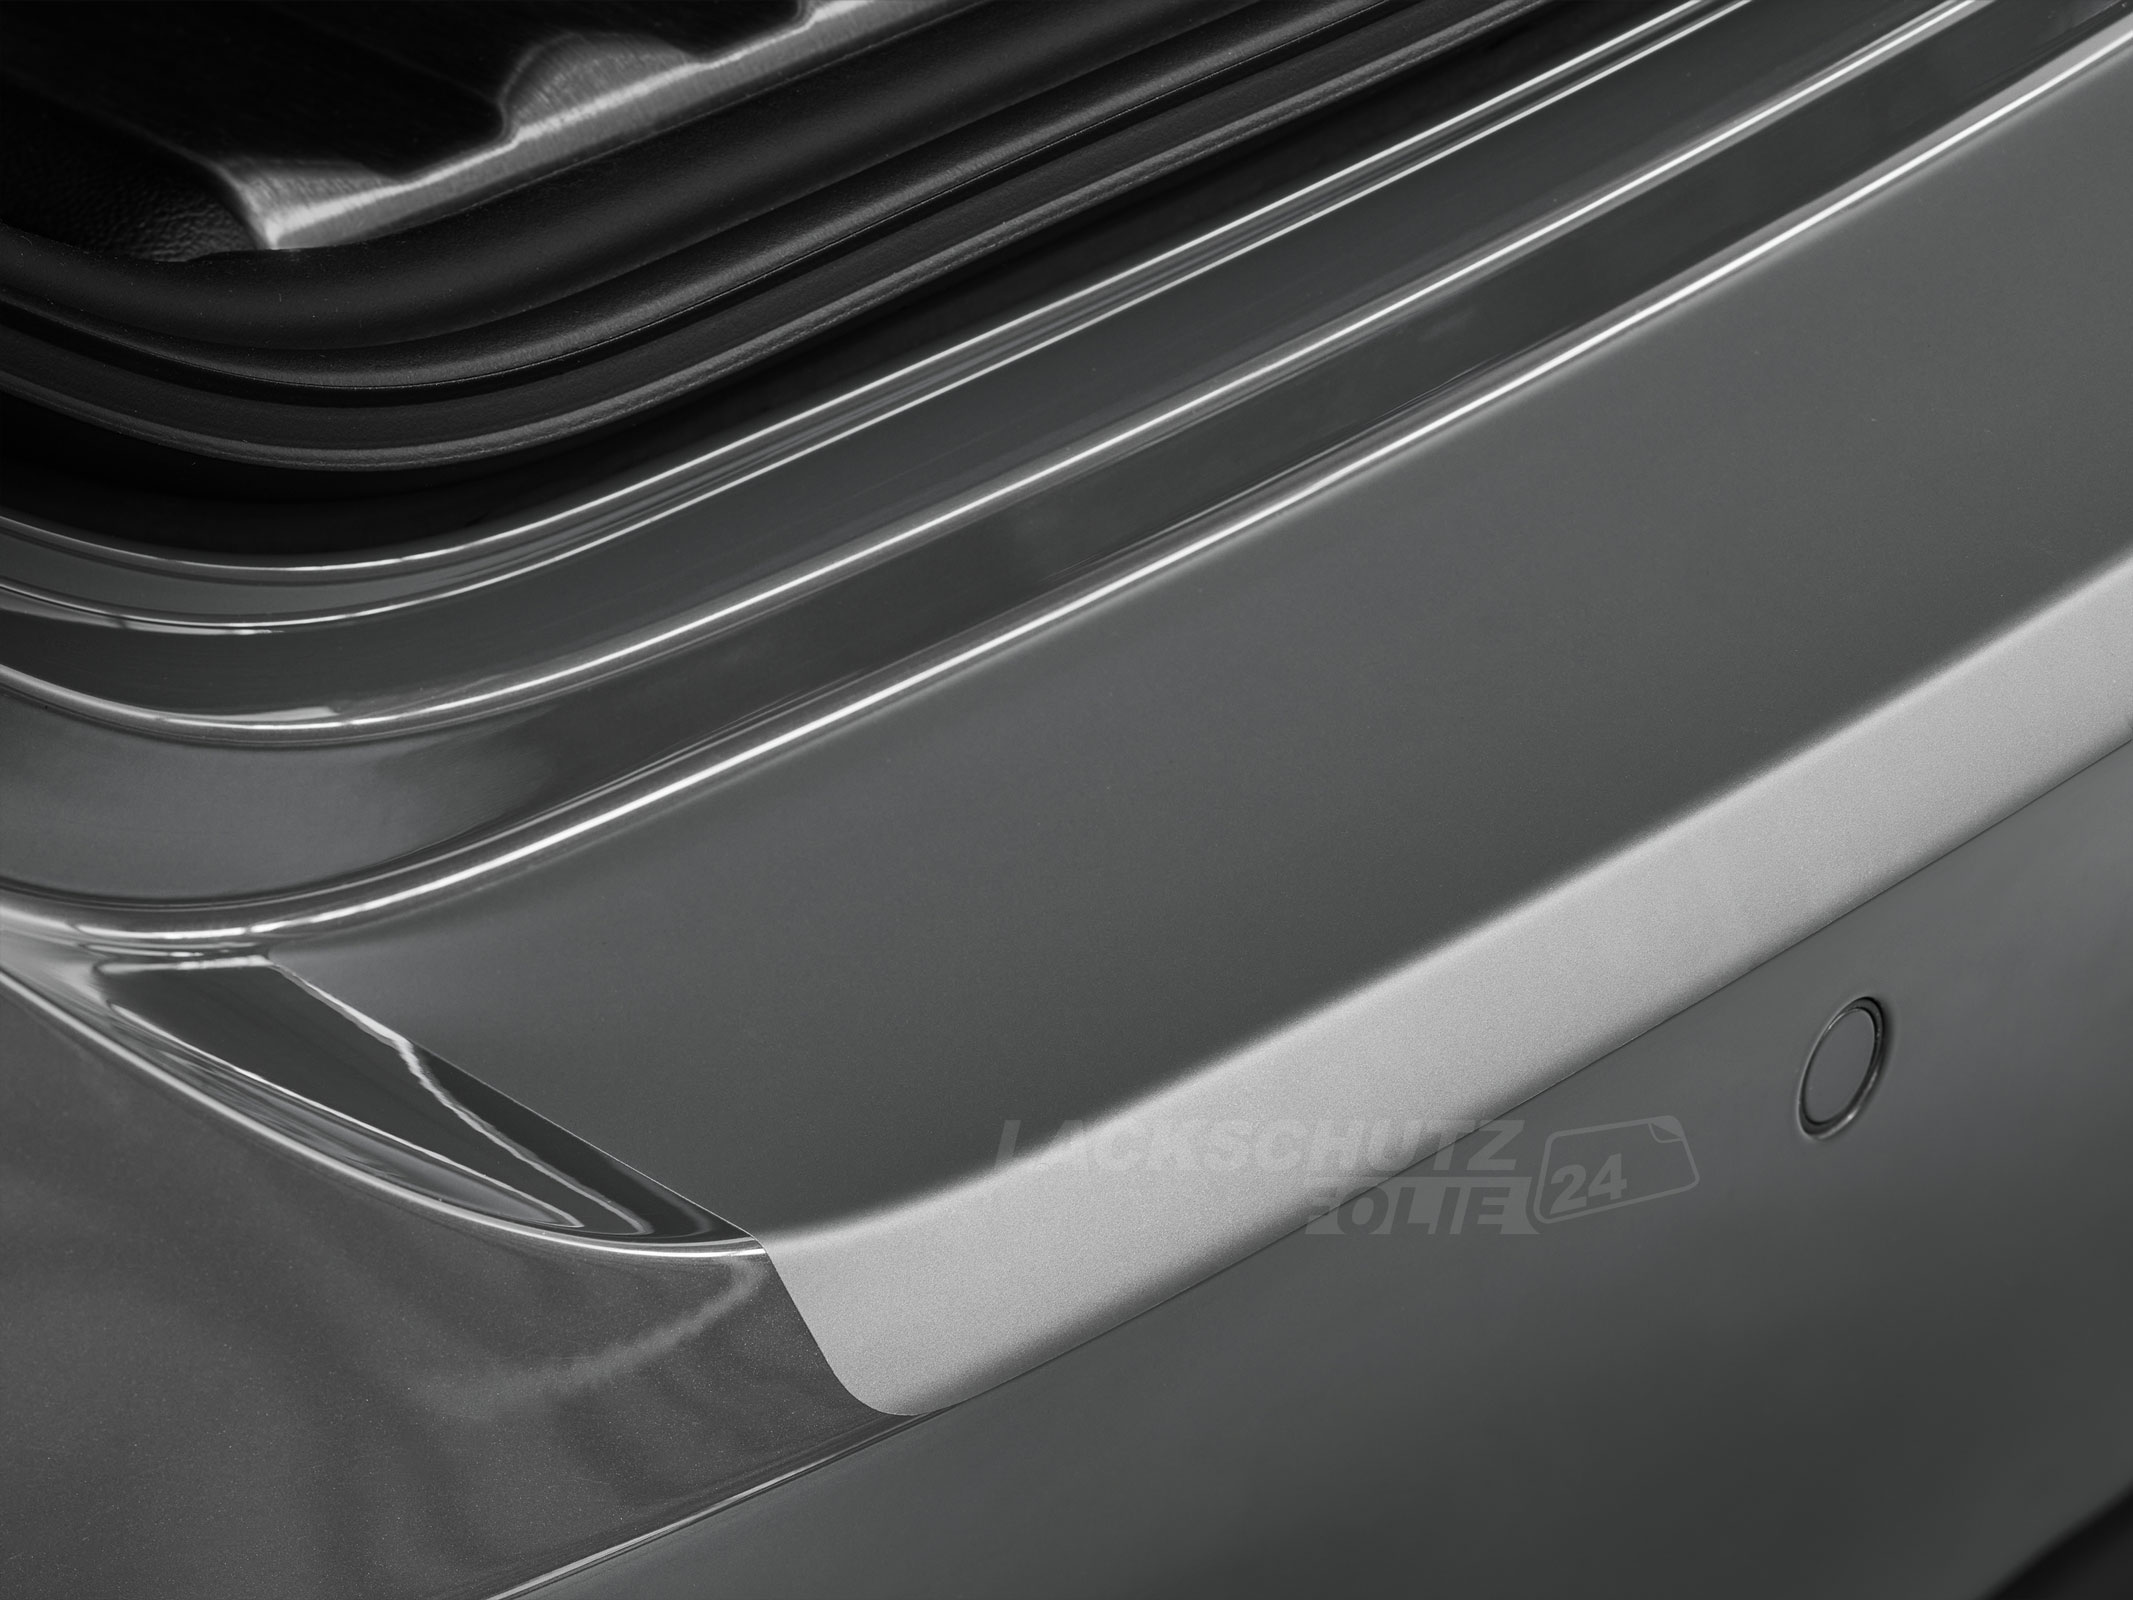 Ladekantenschutzfolie - Transparent Glatt MATT 110 µm stark  für Mercedes-Benz A-Klasse Typ W177, Schrägheck, ab BJ 05/2018